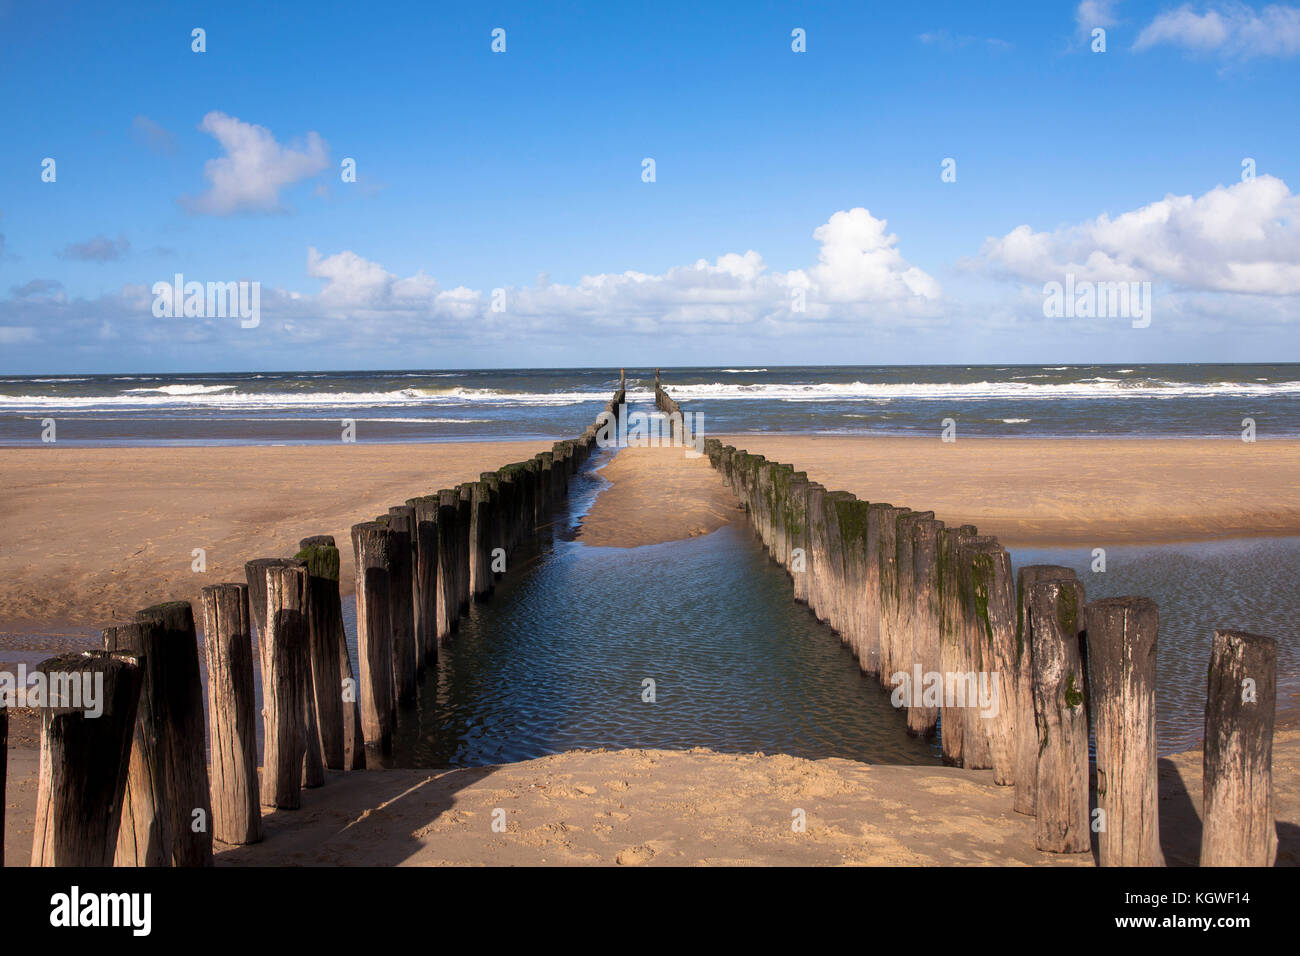 Pays-Bas, à la plage de Domburg sur la péninsule de Walcheren, groins. Niederlande, Am Strand von Domburg auf Walcheren, Buhnen. Banque D'Images